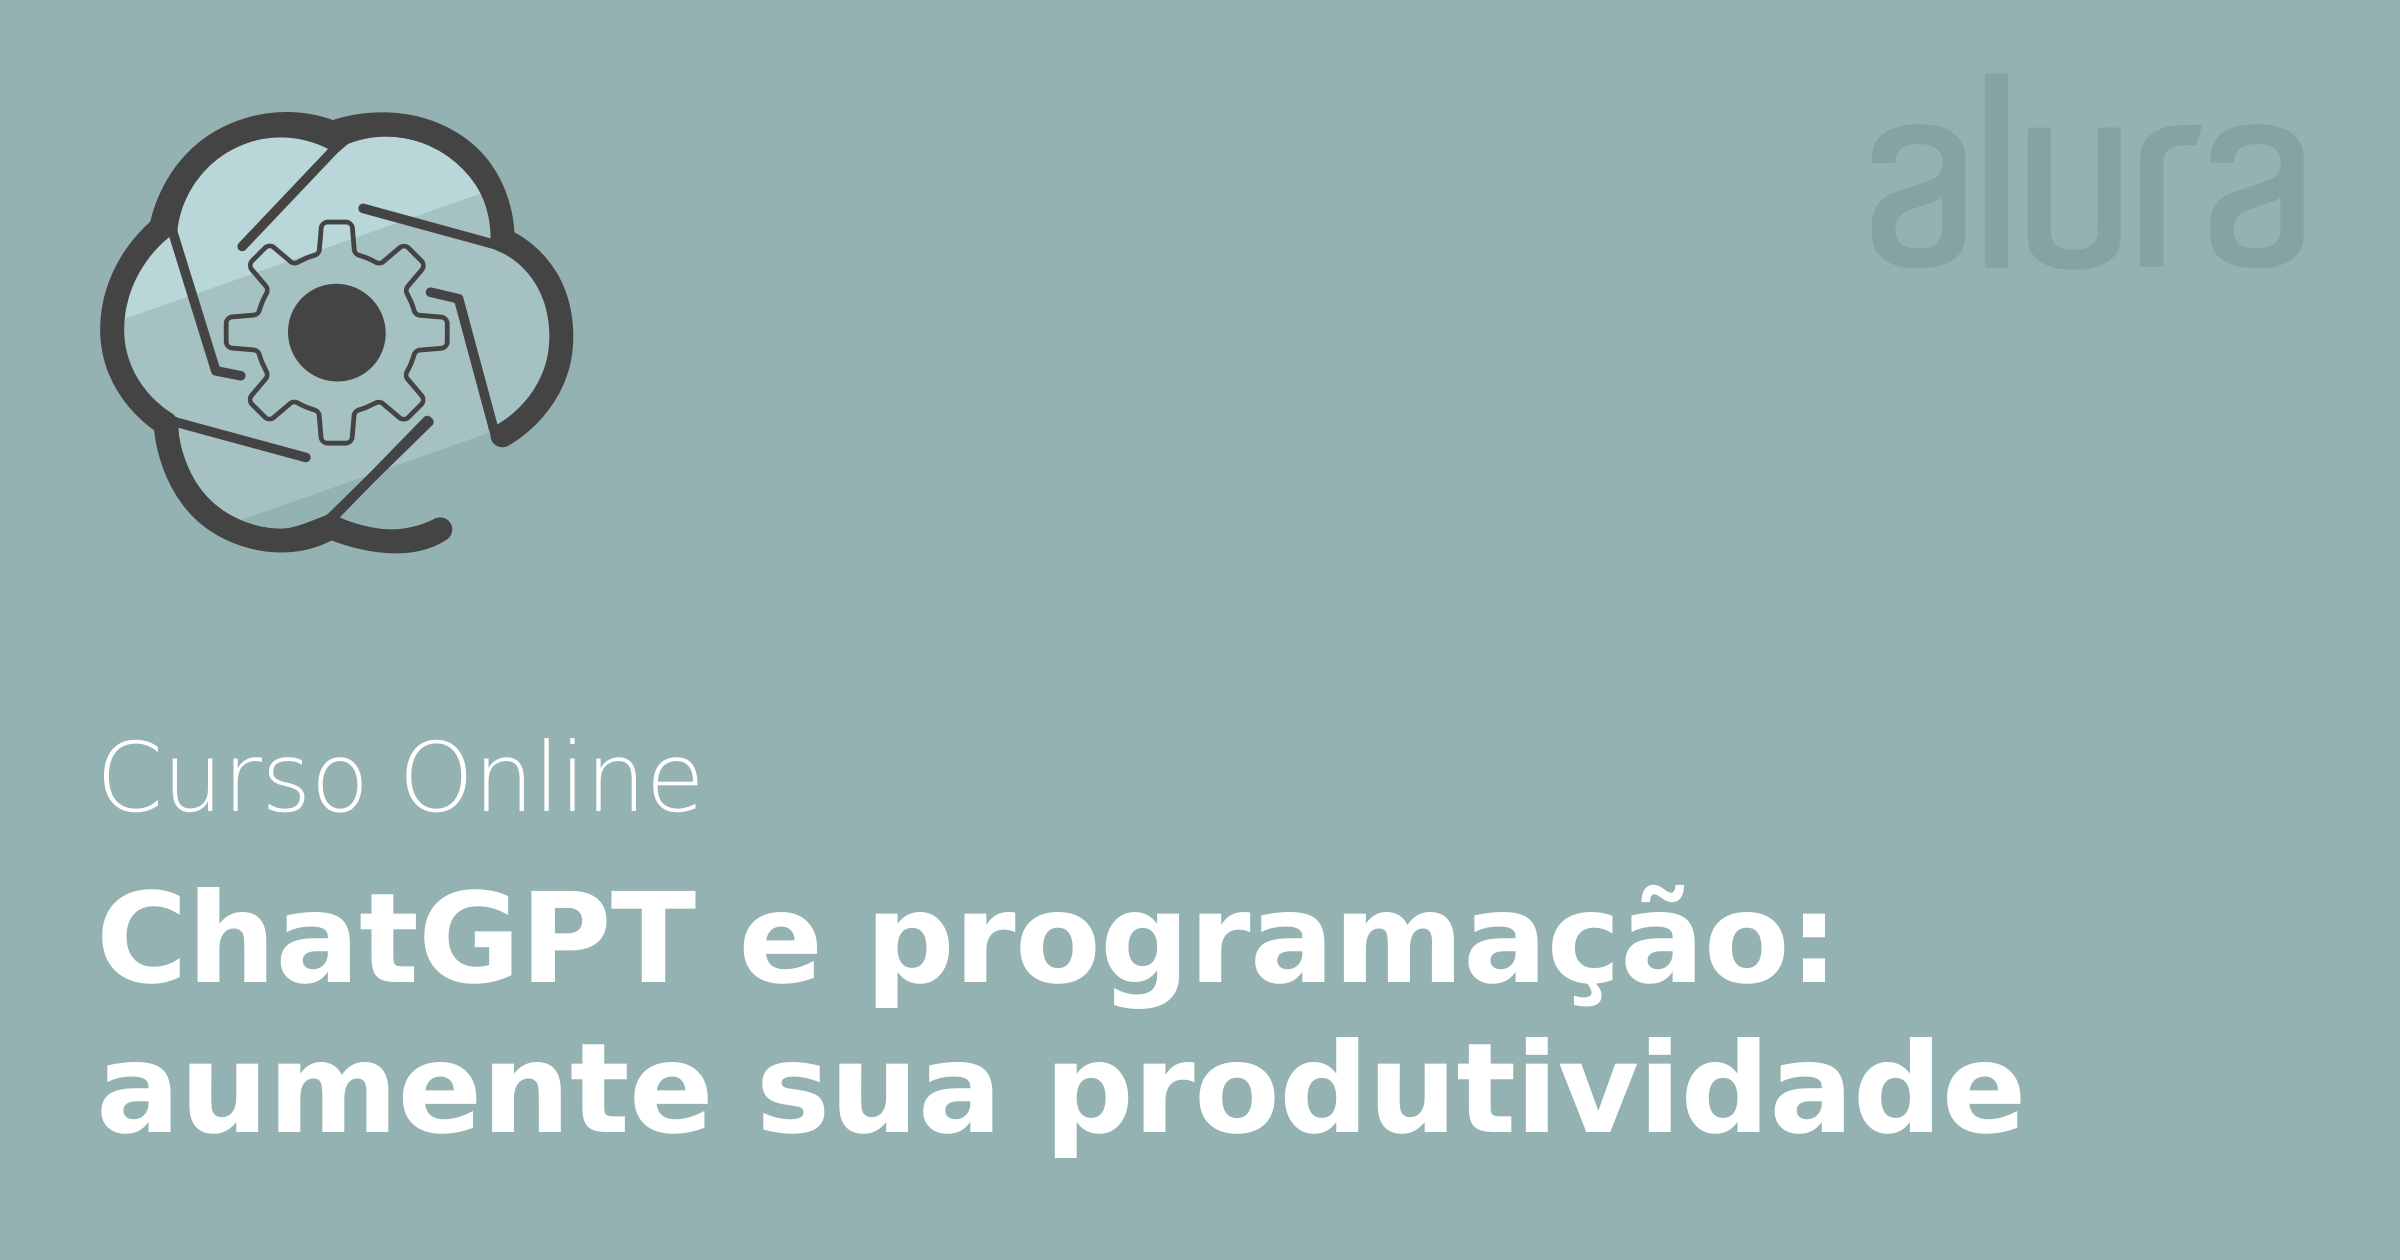 Aplicação PHP não loga no app do facebook pelo localhost - Stack Overflow  em Português